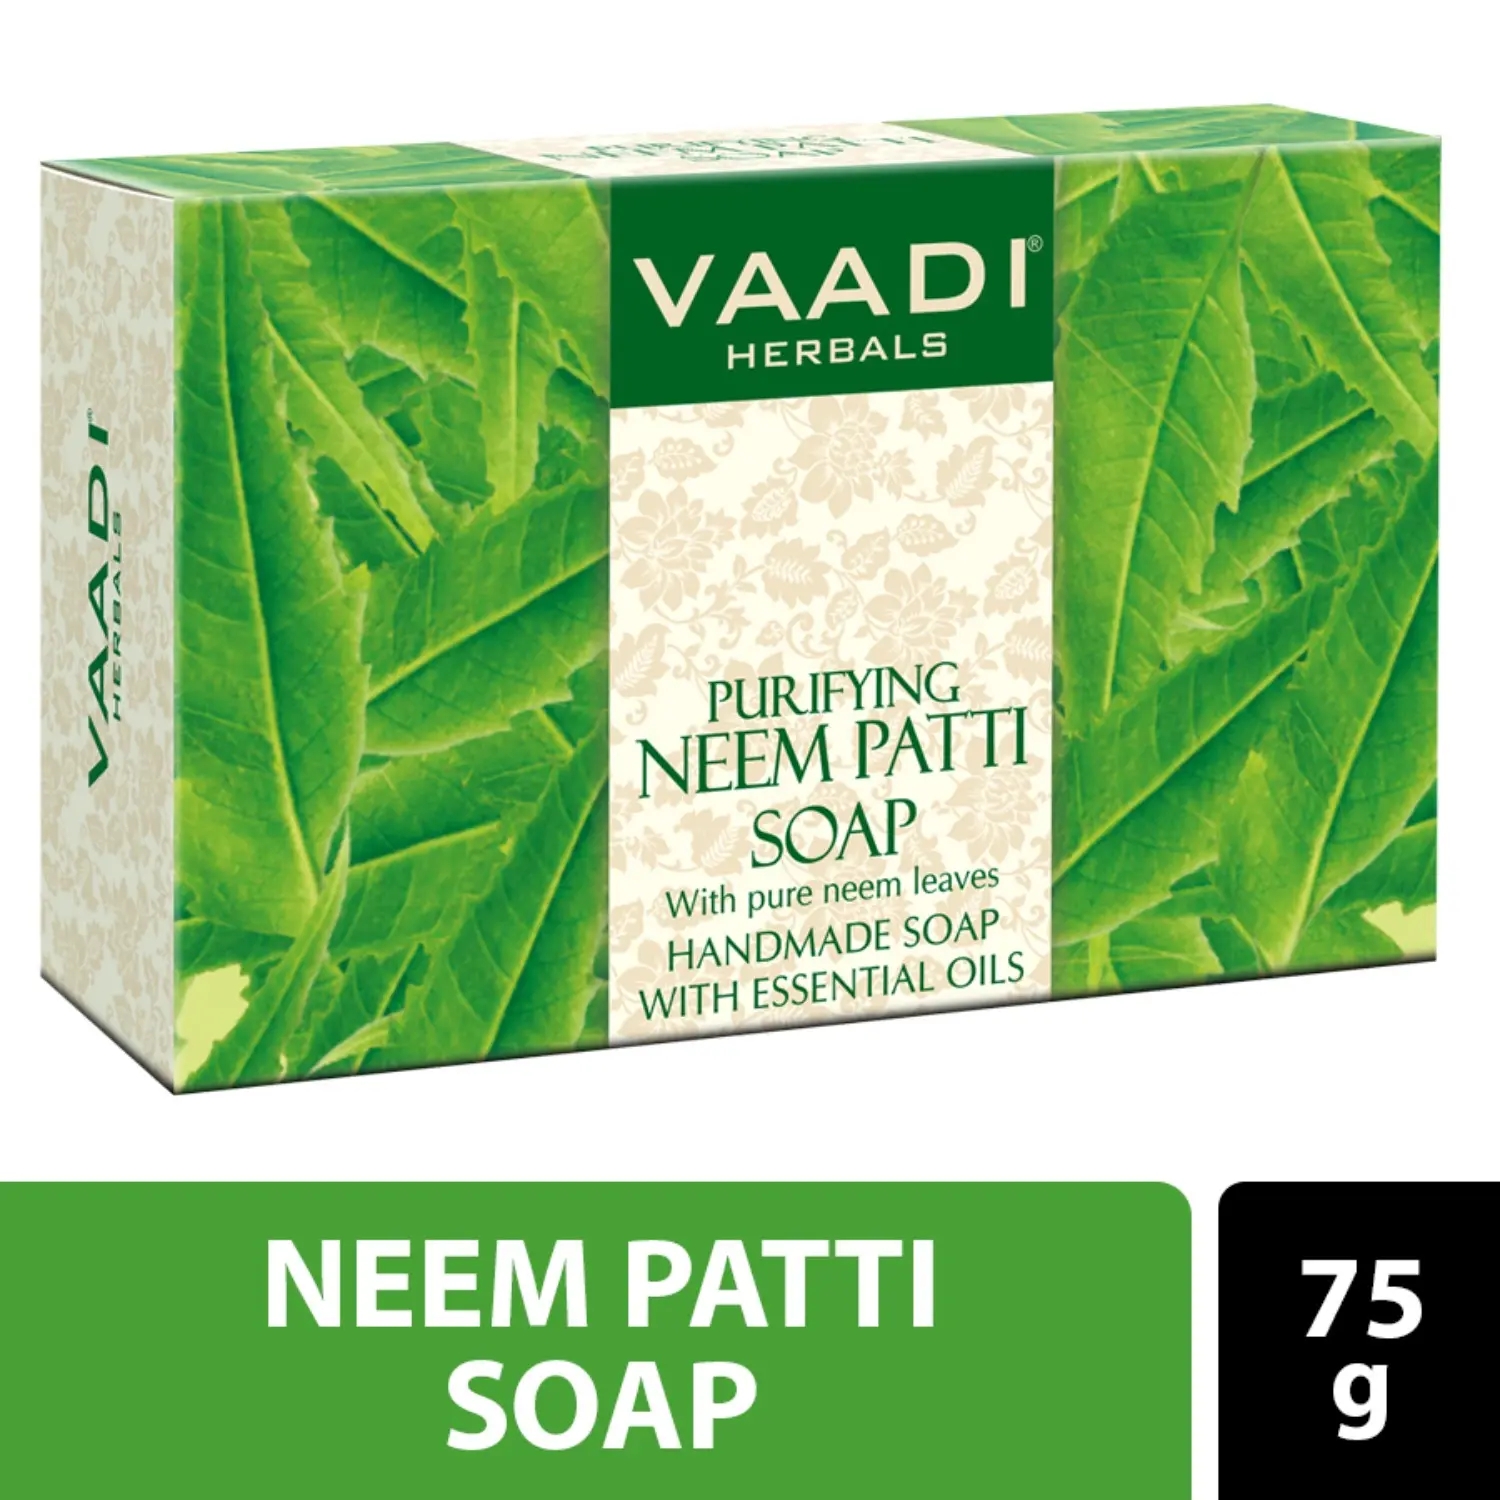 Vaadi Herbals | Vaadi Herbals Purifying Neem Patti Handmade Soap (75g)